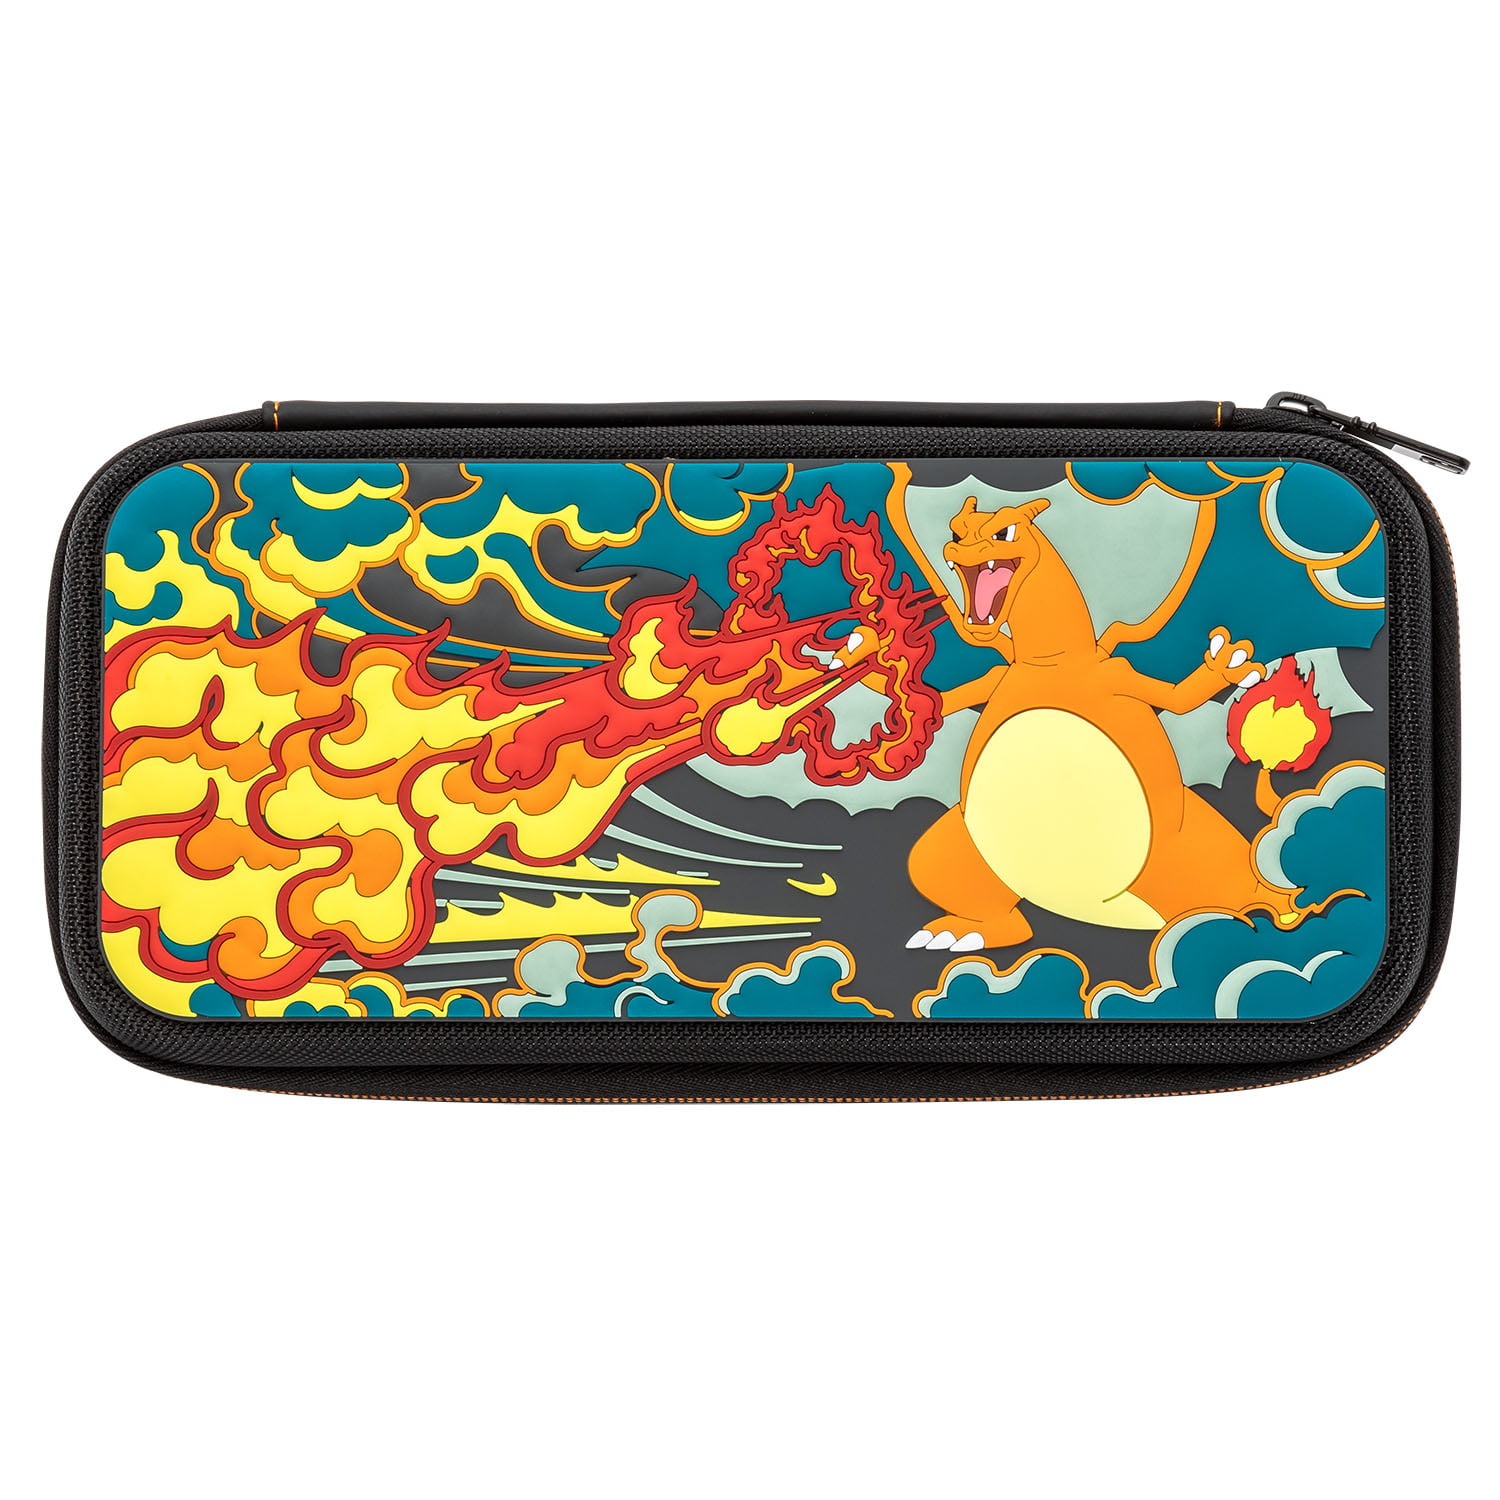 Pdp Nintendo Switch Pokemon Charizard Battle Deluxe Travel Case